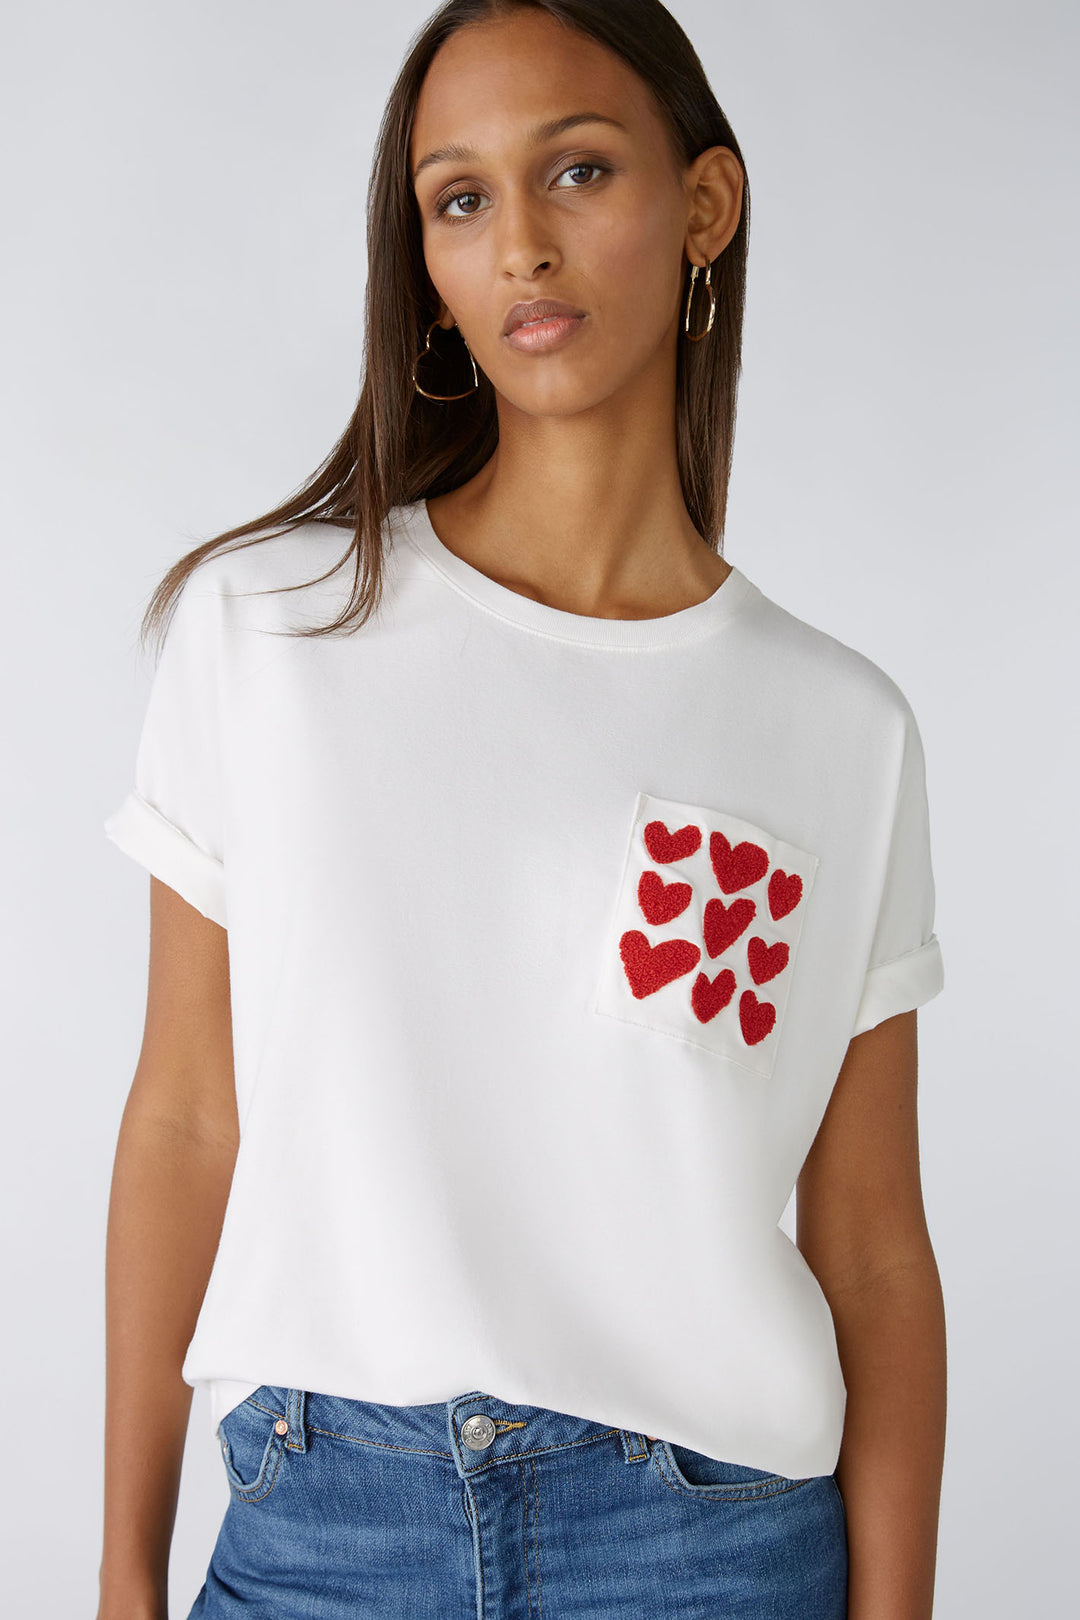 Oui 86759 White Cloud Dancer Red Heart Motif T-Shirt - Olivia Grace Fashion